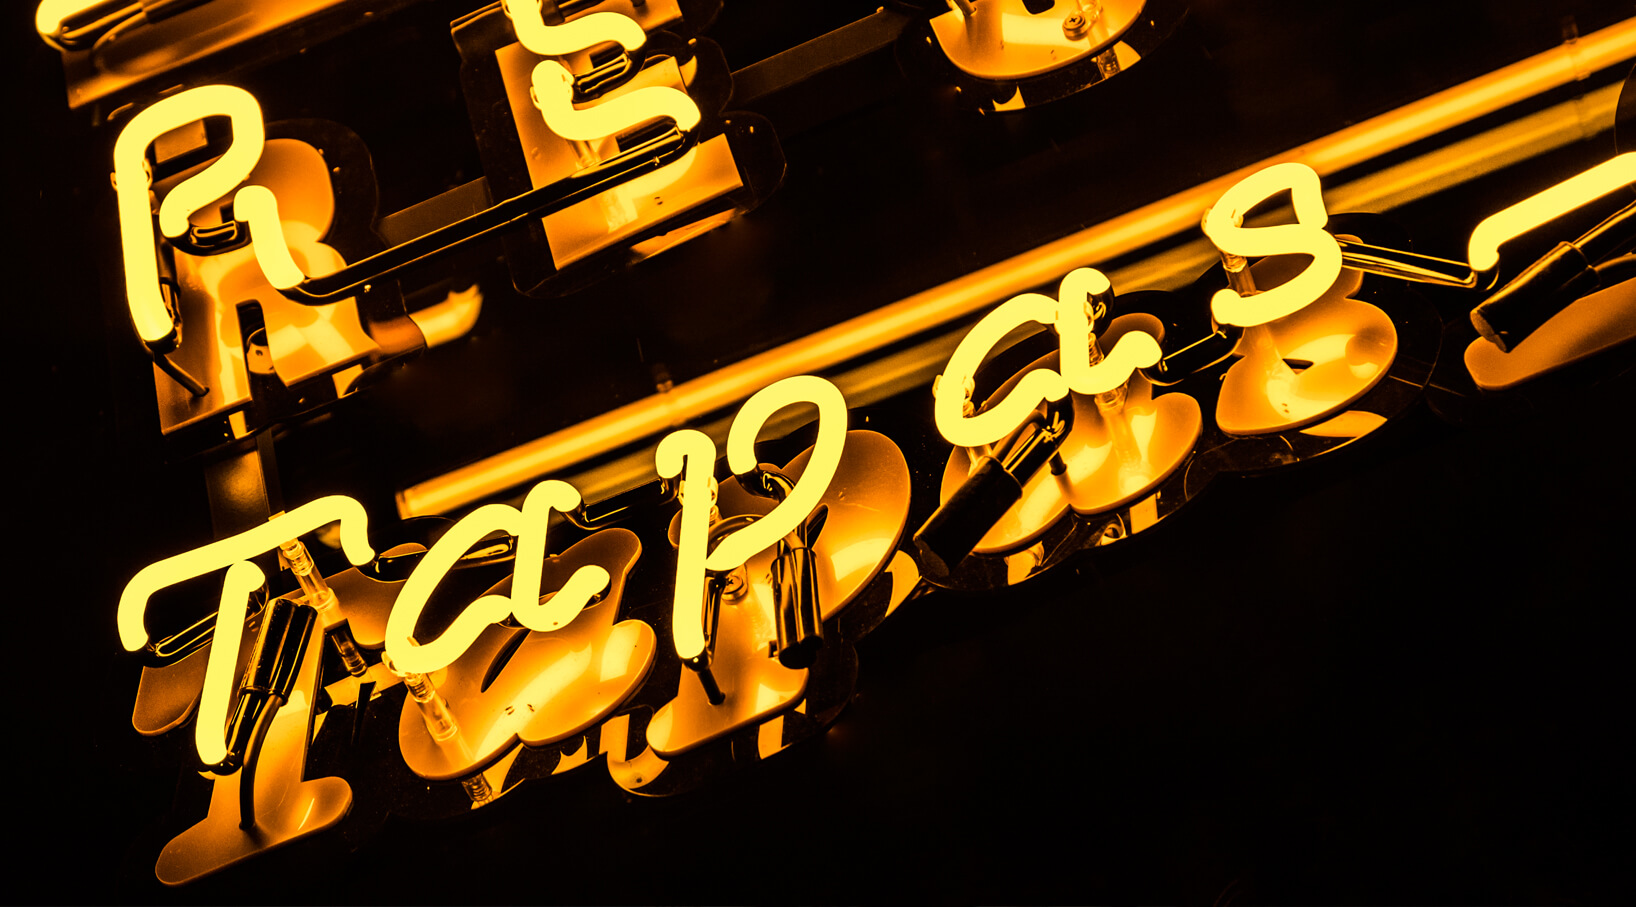 Esplendidos Restaurant Tapas Restaurant - neon-restaurant-esplendidos-tapas-restaurant-neon-farbig-neon-an-der-wand-restaurant-fenster-neon-hoch-neon-auf-stahl-neon-unter-licht-schrift-neon-buchstaben-neon-dynia-redłowo